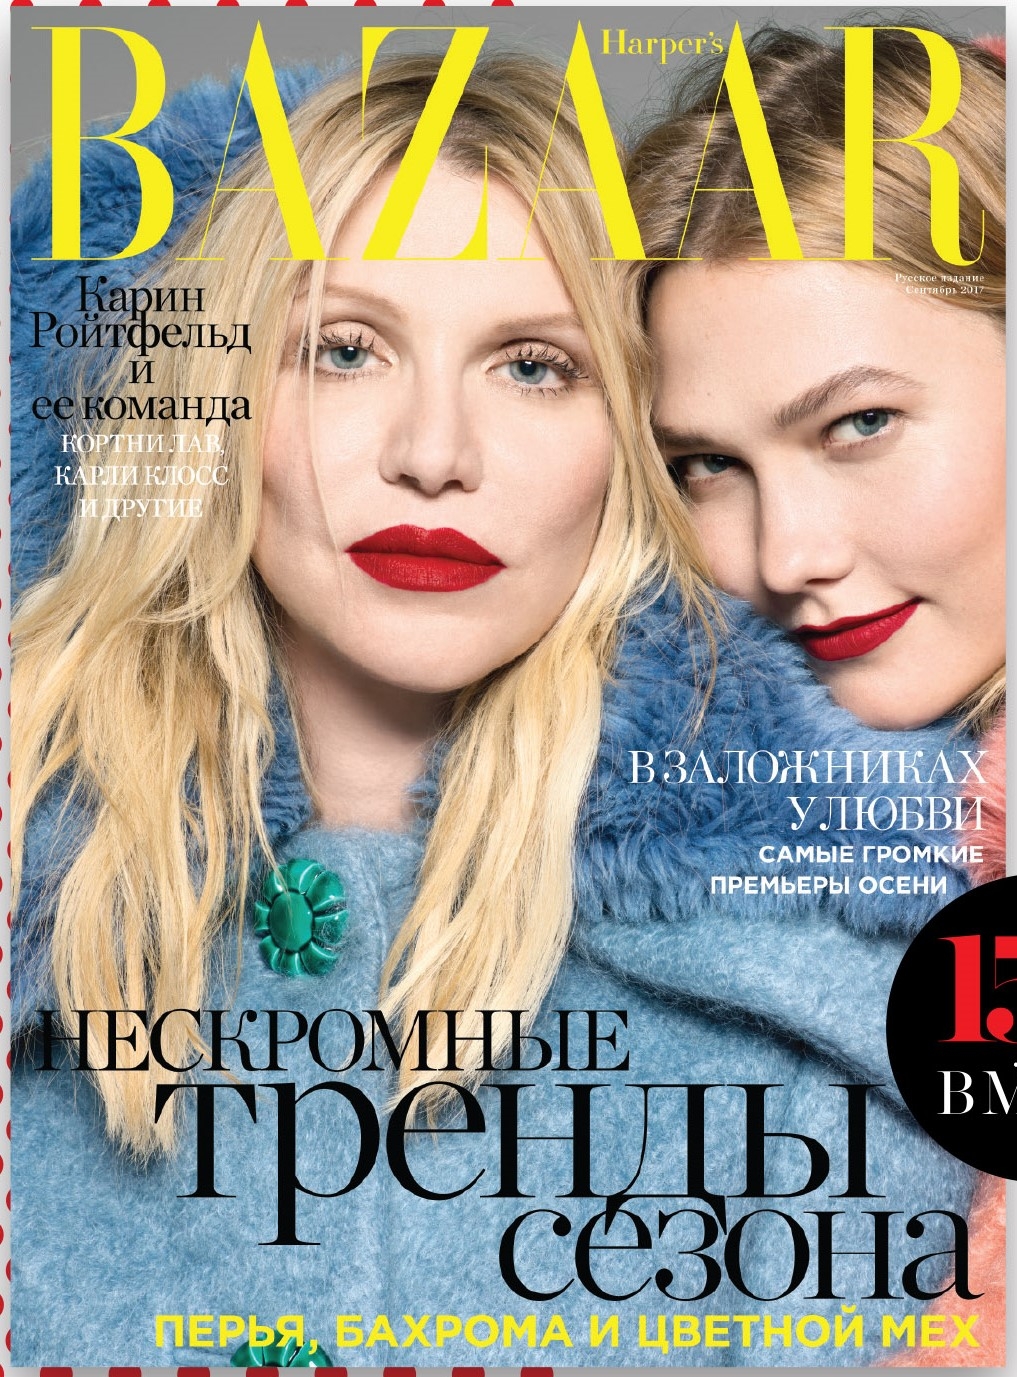 Harpers Bazaar September 2017 Russsia.jpg